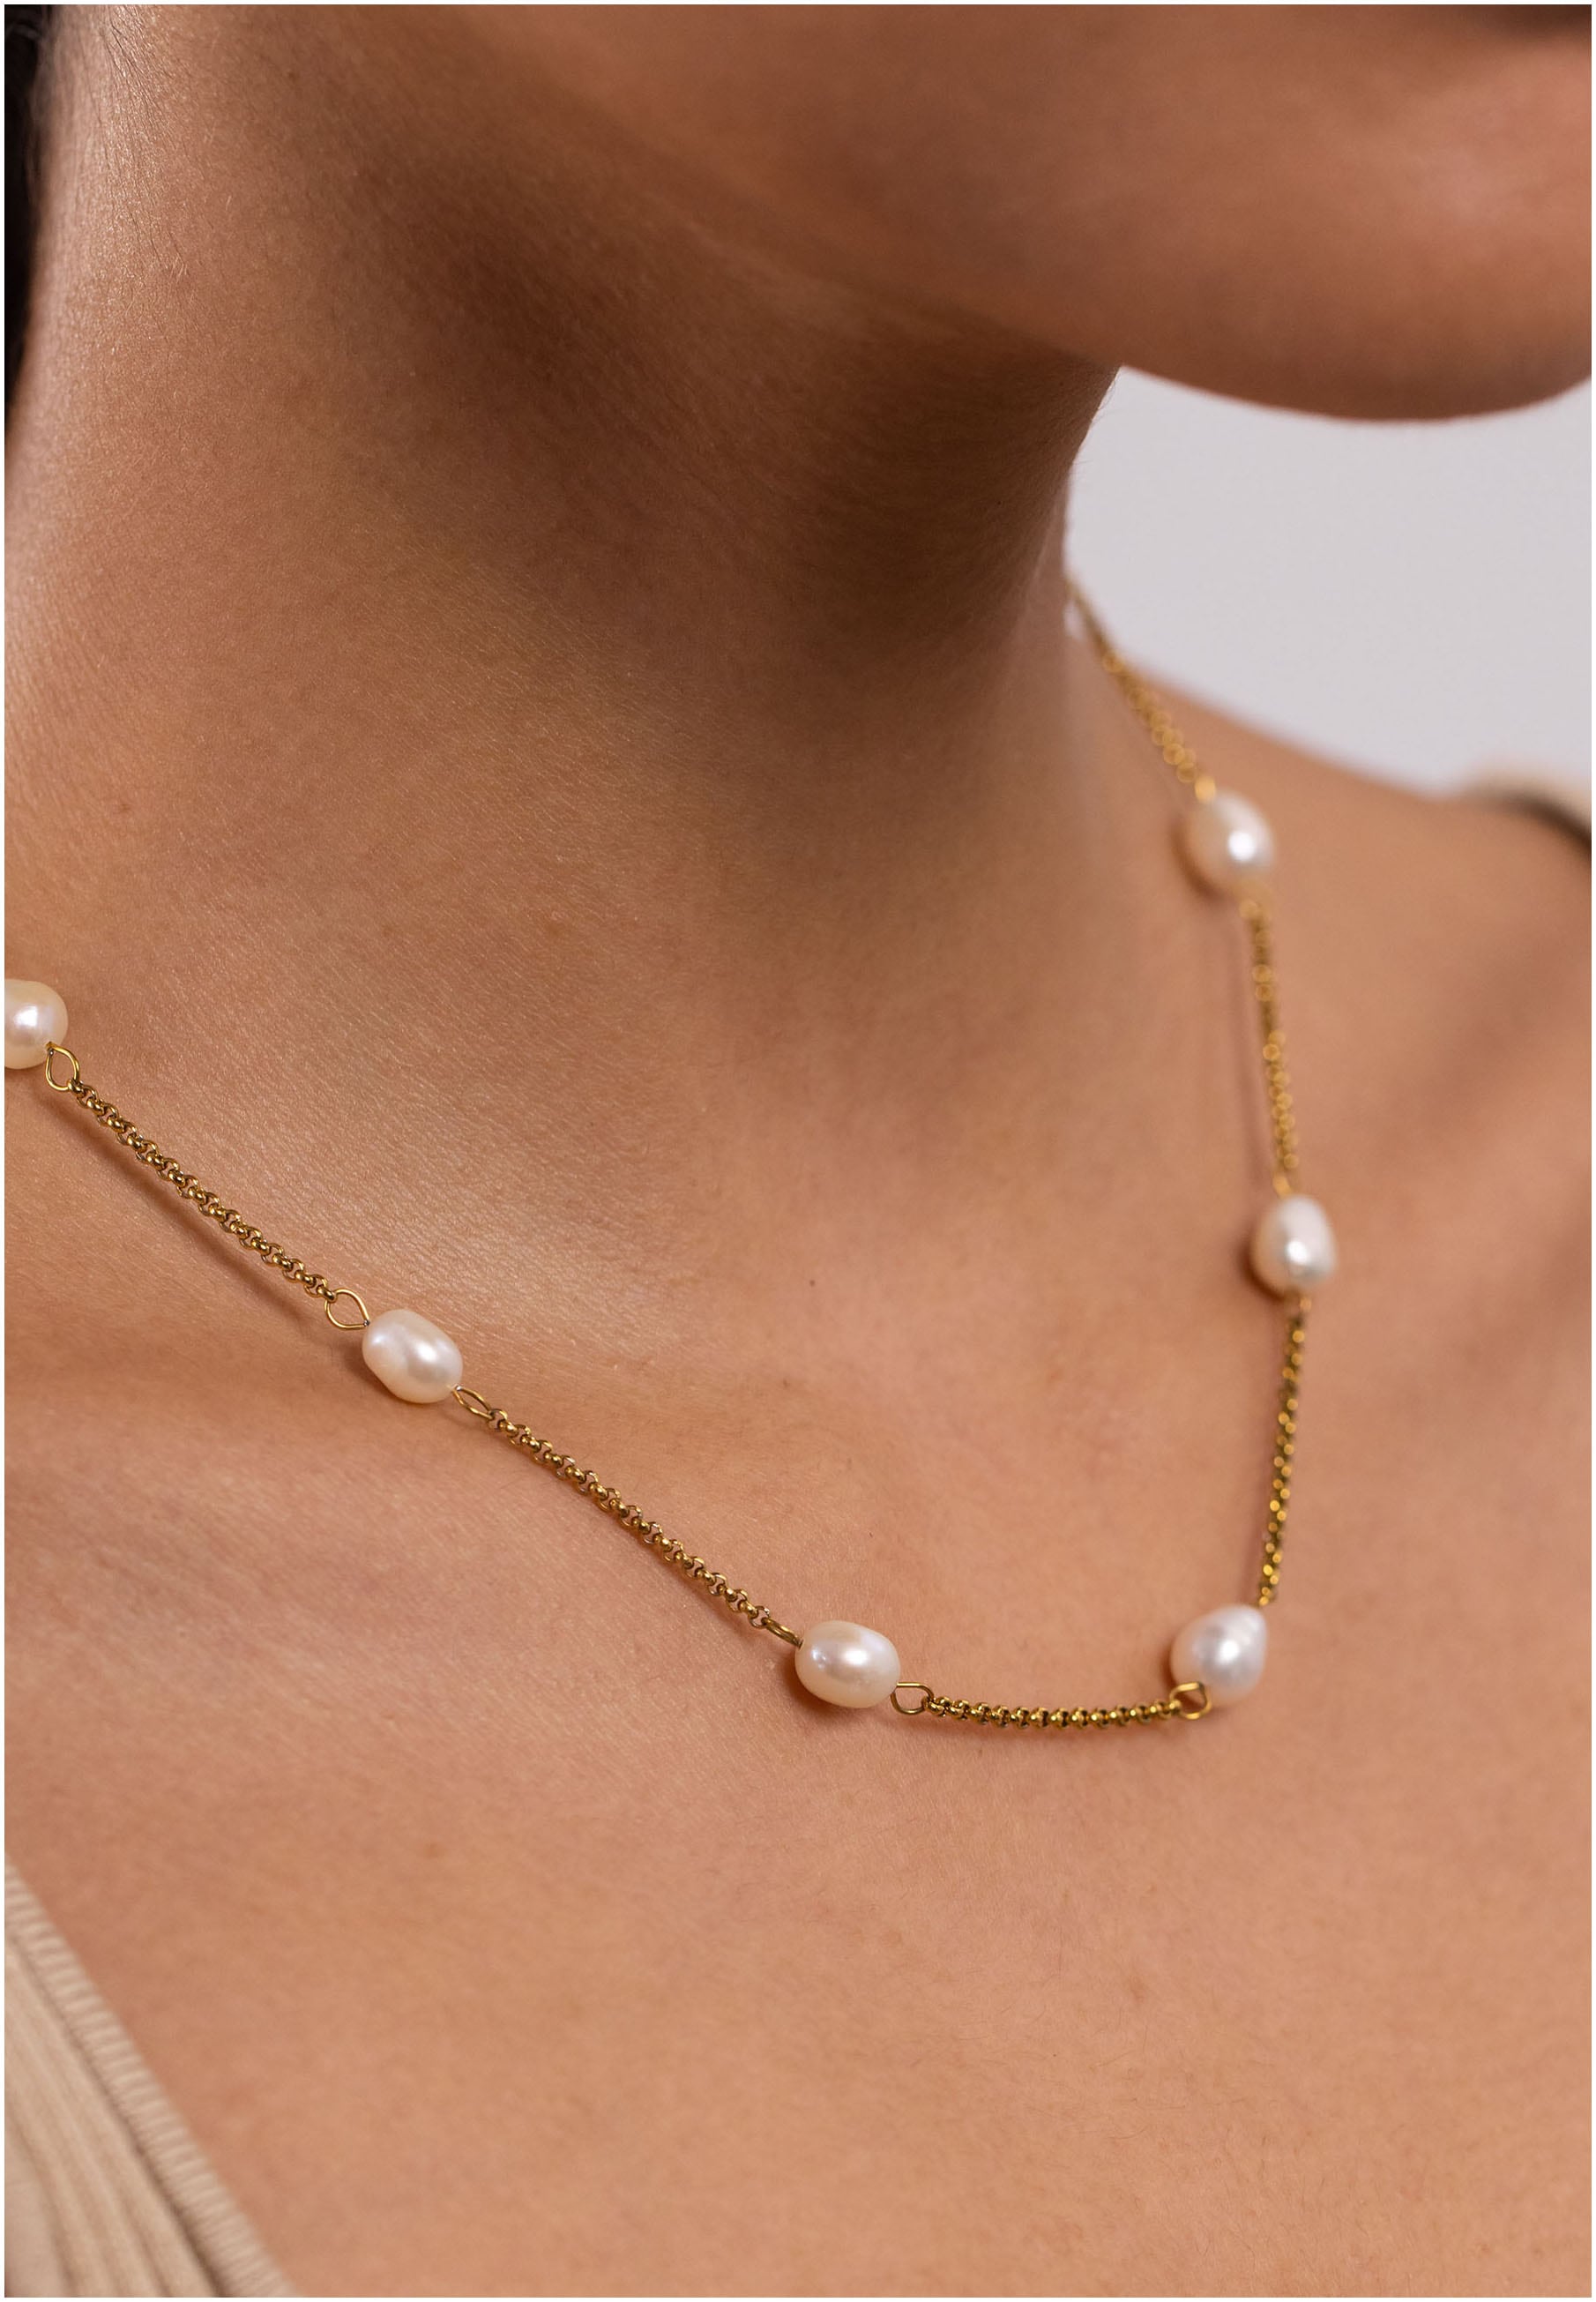 Purelei Perlenkette »Schmuck Geschenk Malahi, 2024«, mit Süßwasserzuchtperle